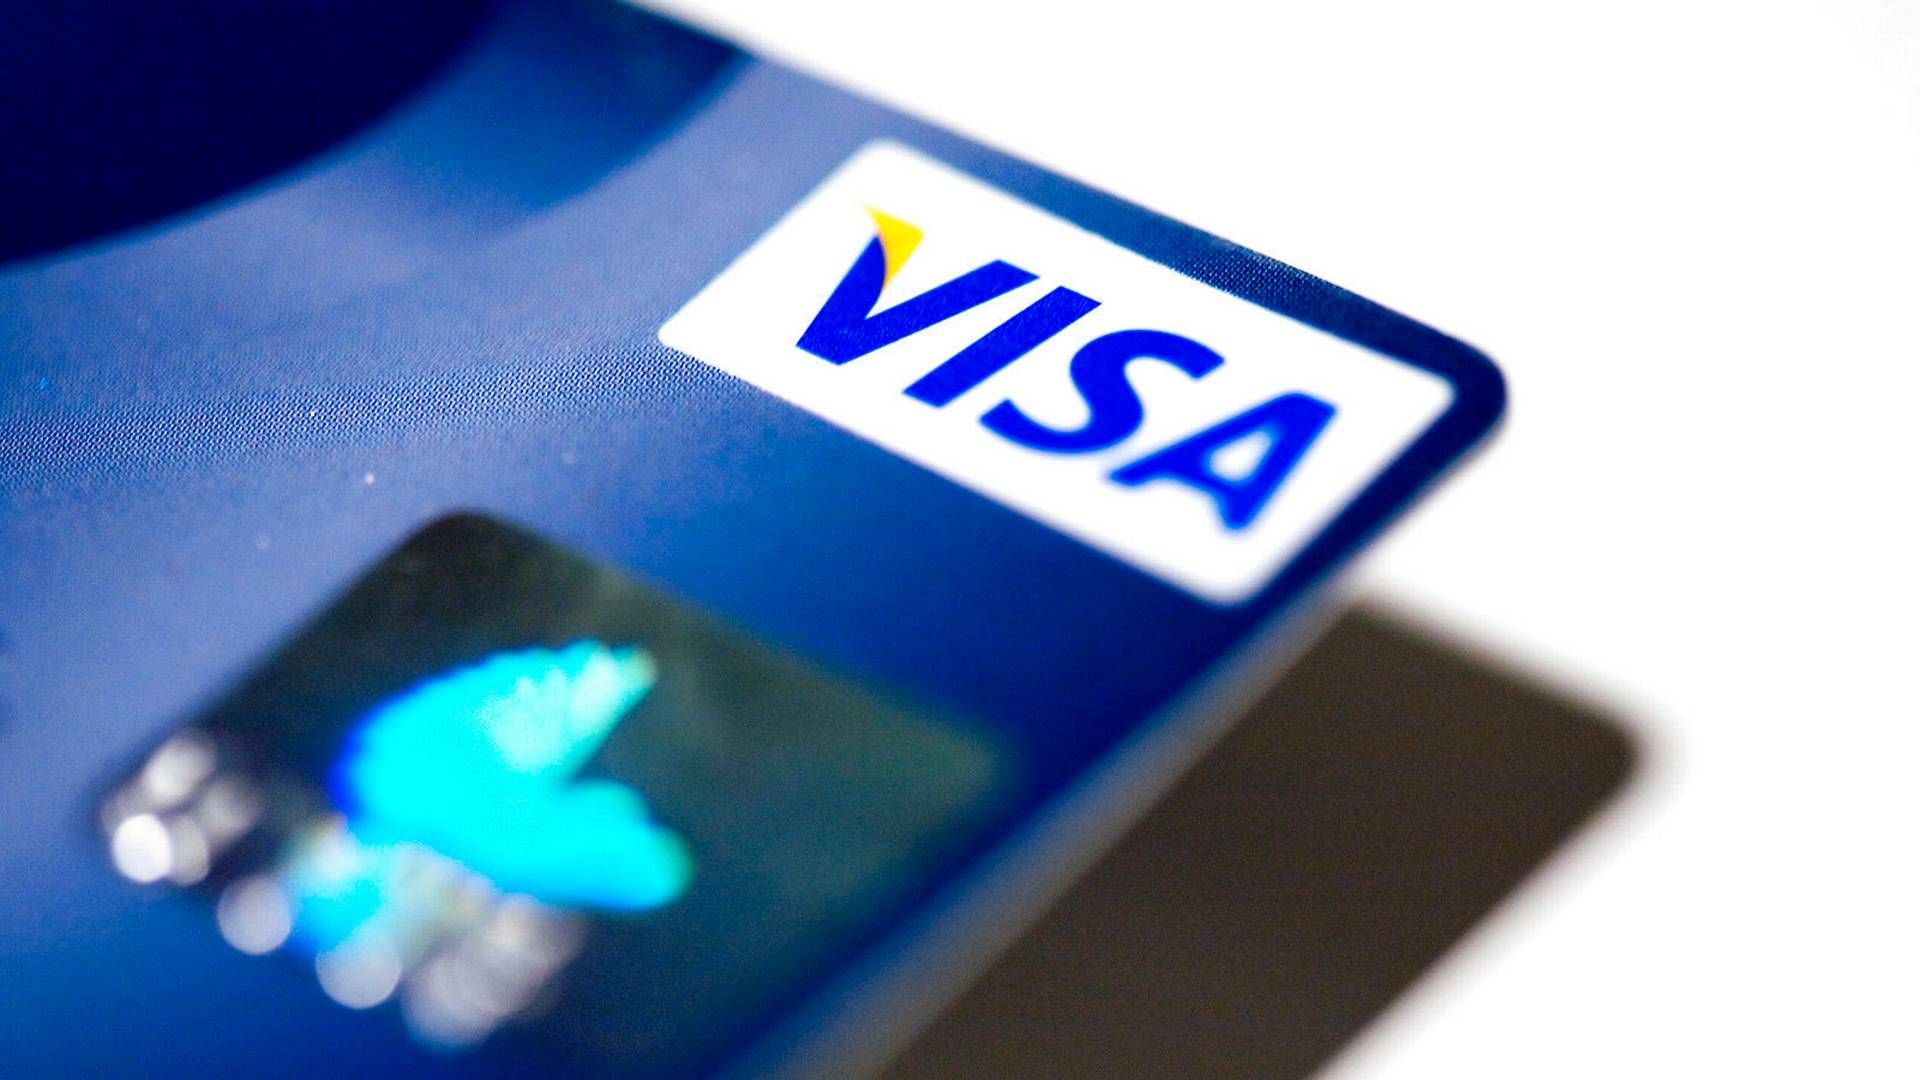 Nordea og Danske Bank opkræver for højt valutatillæg ved køb på Visa/Dankort i udlandet, mener Konkurrencerådet. | Foto: Thomas Borberg/Politiken/Ritzau Scanpix